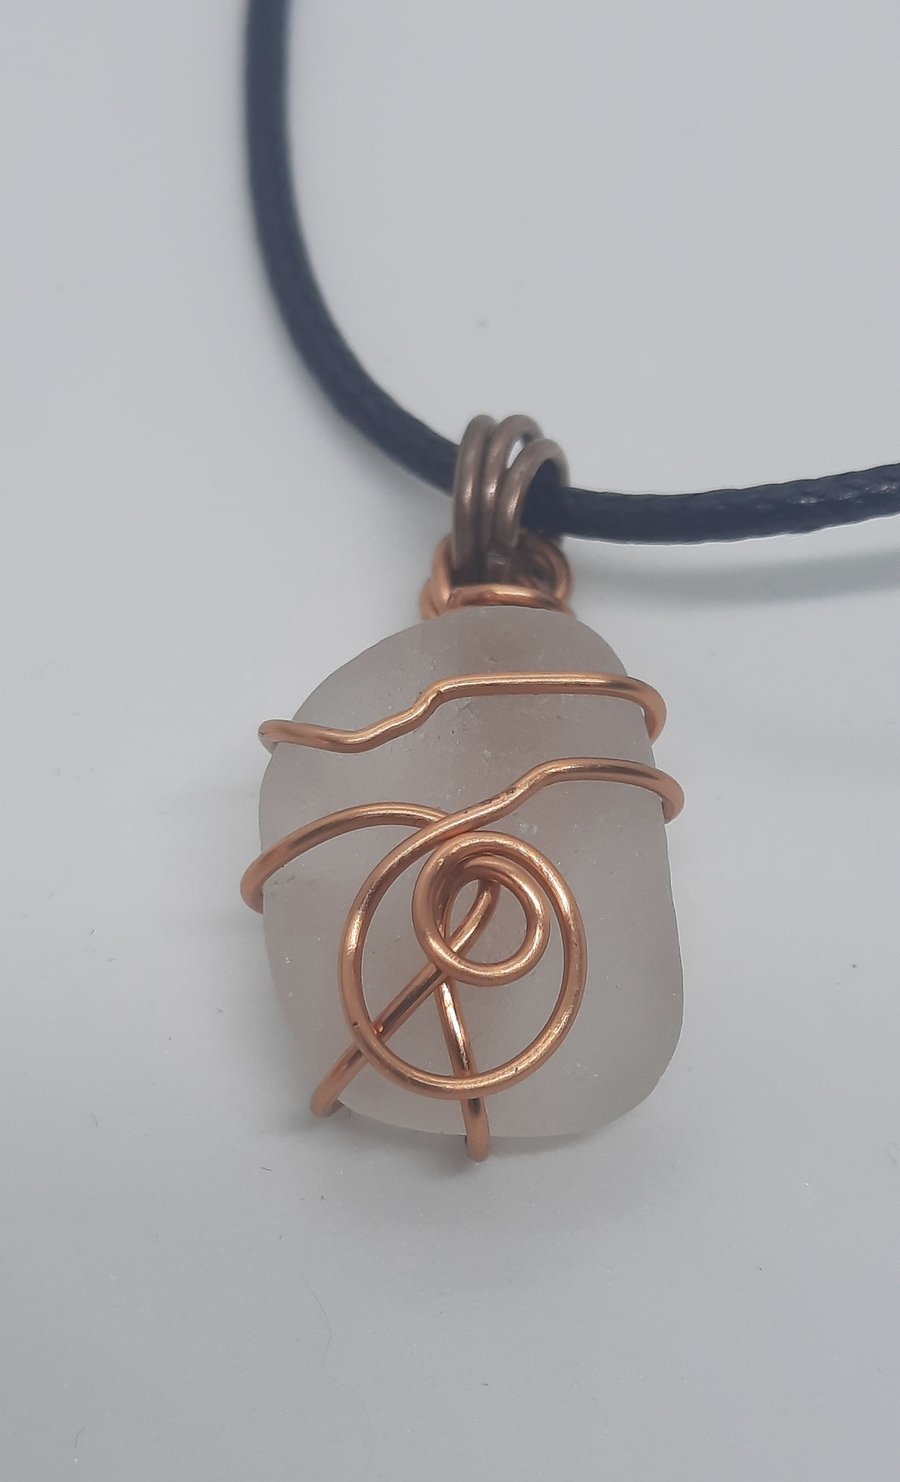 Sea glass wire wrapped pendant necklace (E1.6)